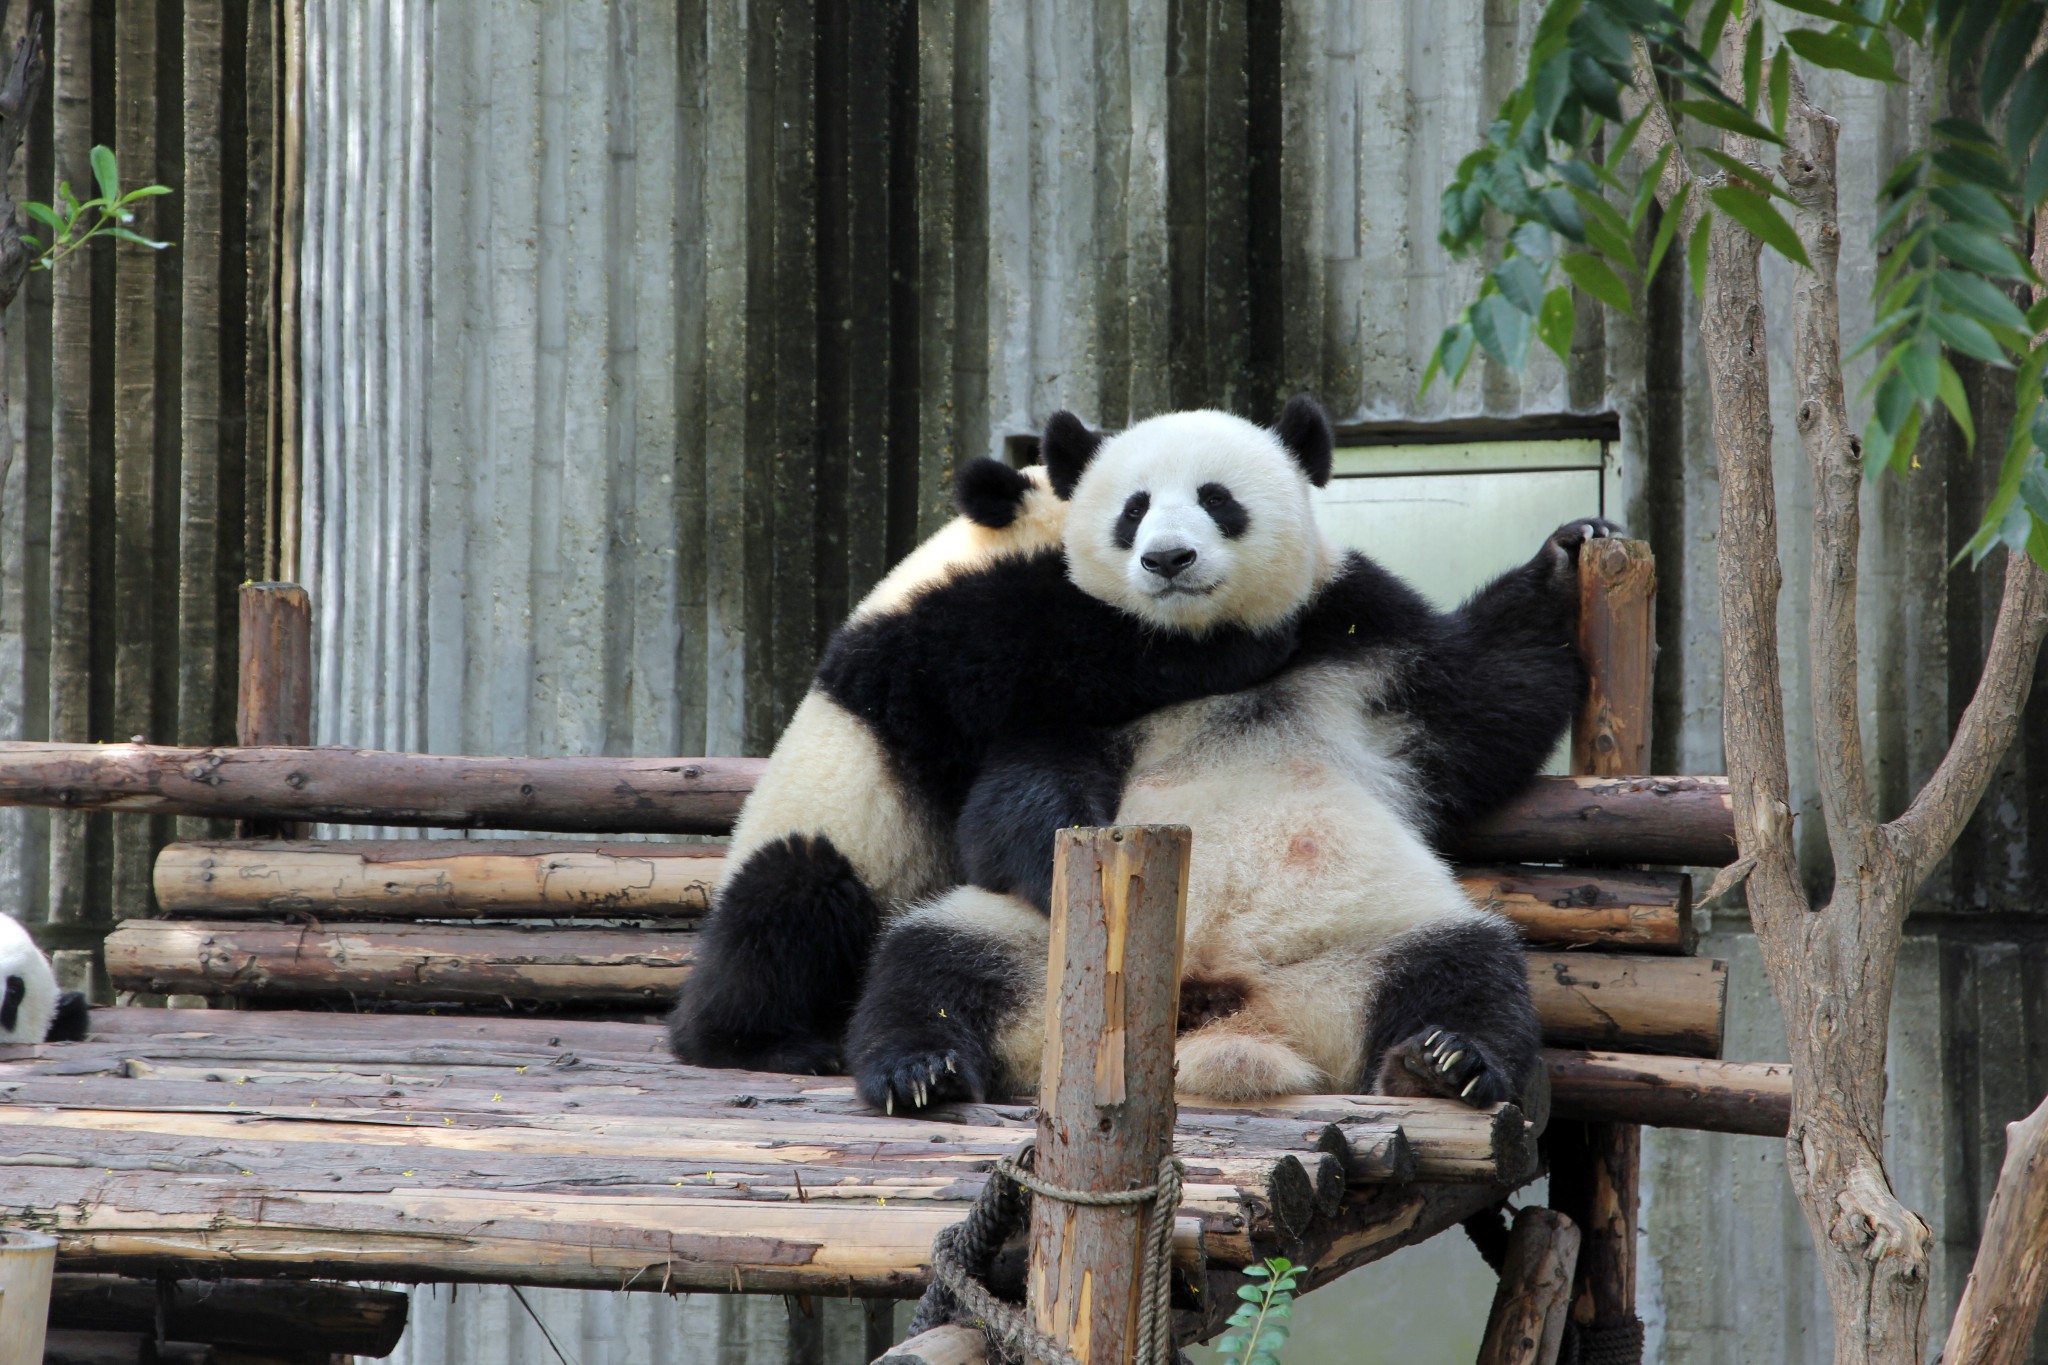 Visit Giant Pandas in Chengdu